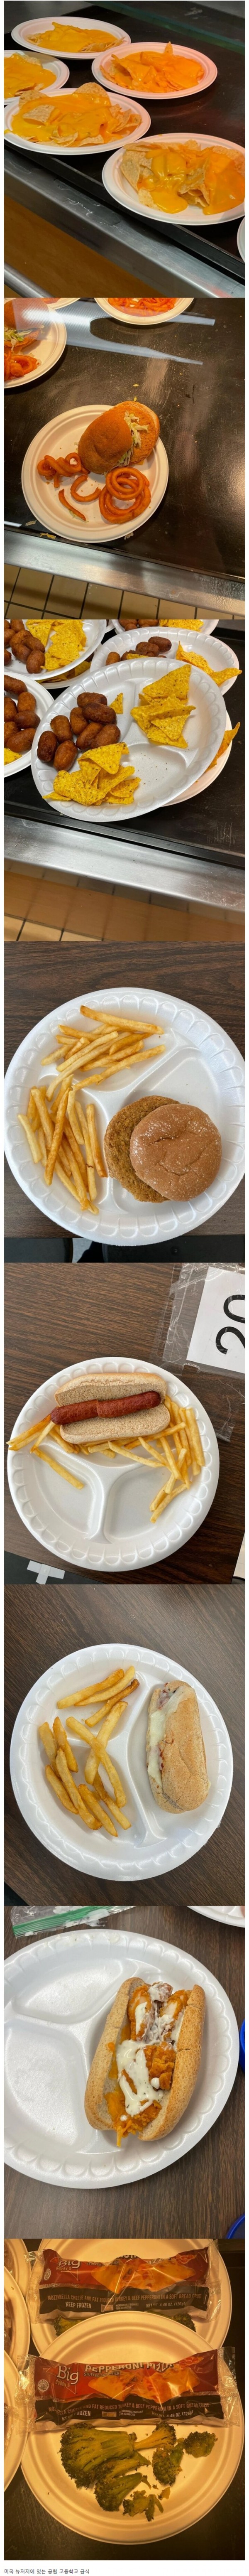 미국 고등학교 흔한 급식